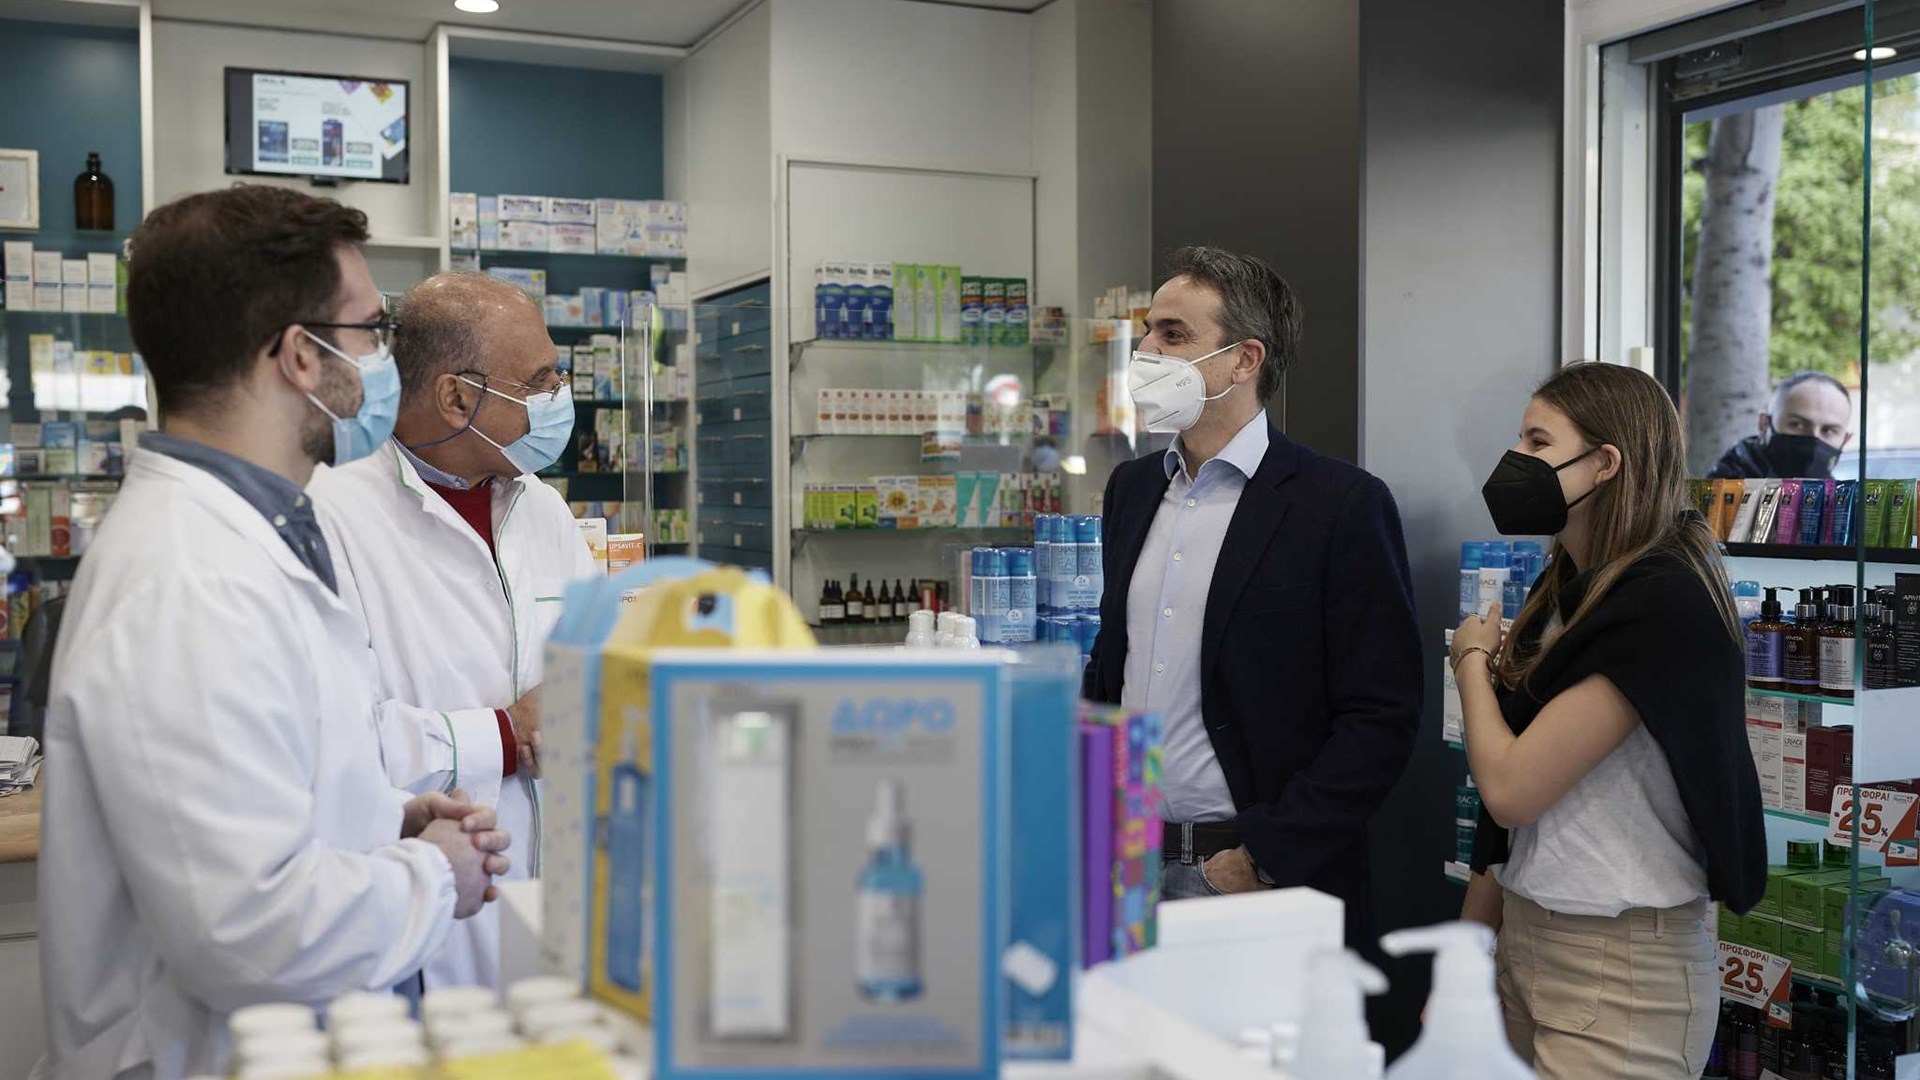 Κυριάκος Μητσοτάκης: Σε φαρμακείο στην Καλλιθέα με την κόρη του για να προμηθευτεί self test – ΦΩΤΟ